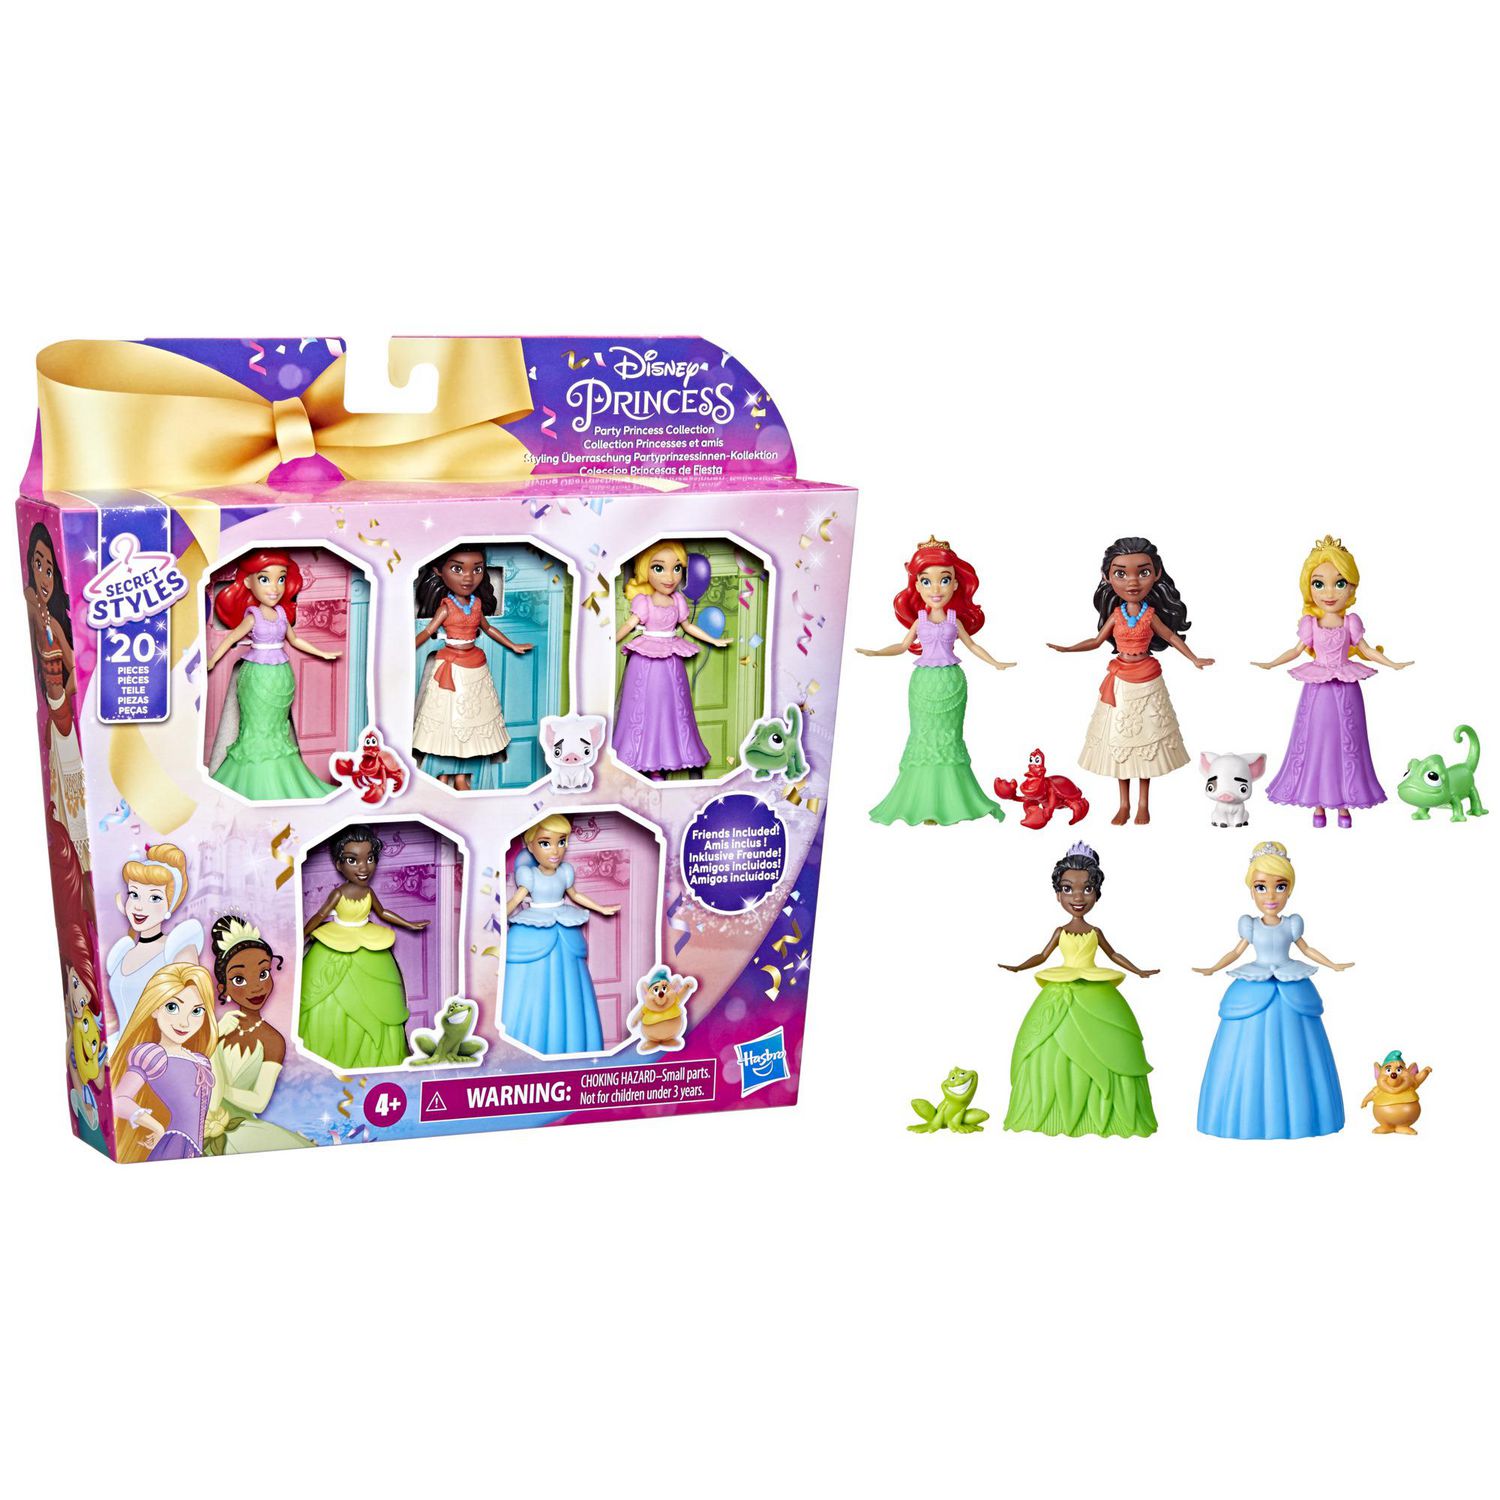 Disney Princess Party Princess Collection, 5 Disney Princess Mini